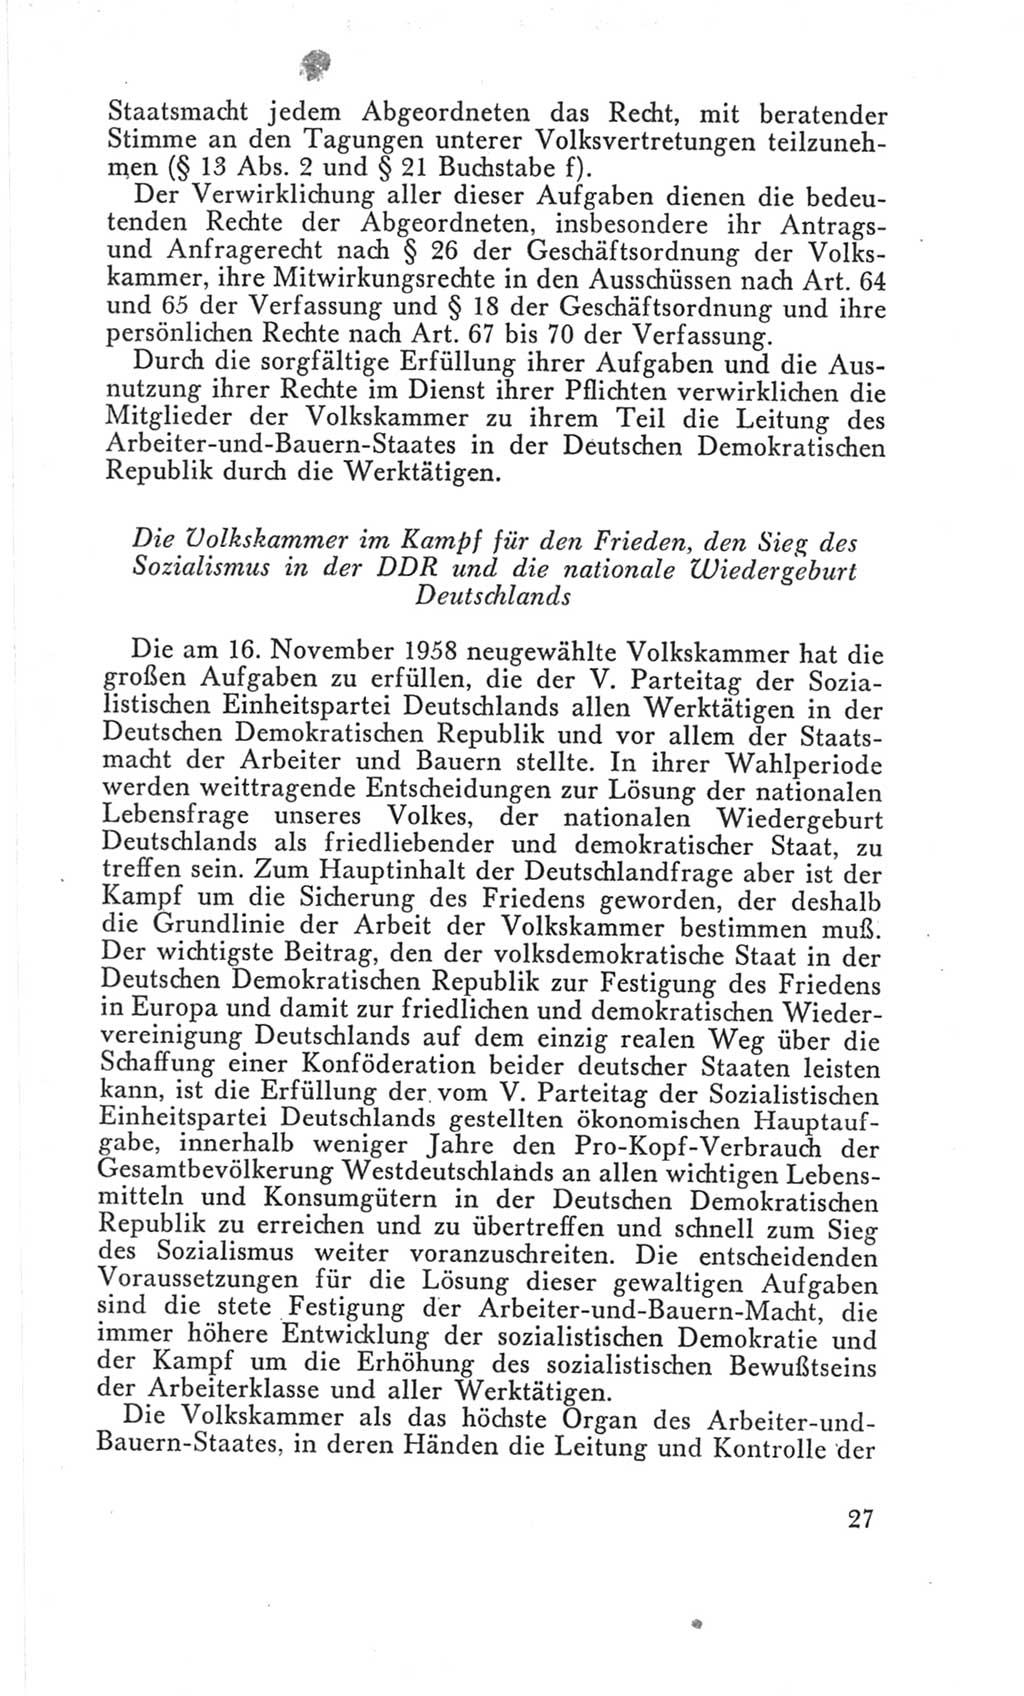 Handbuch der Volkskammer (VK) der Deutschen Demokratischen Republik (DDR), 3. Wahlperiode 1958-1963, Seite 27 (Hdb. VK. DDR 3. WP. 1958-1963, S. 27)